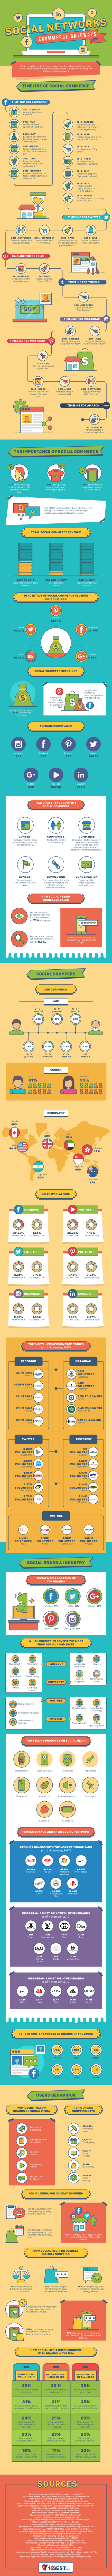 social e-commerce infographic